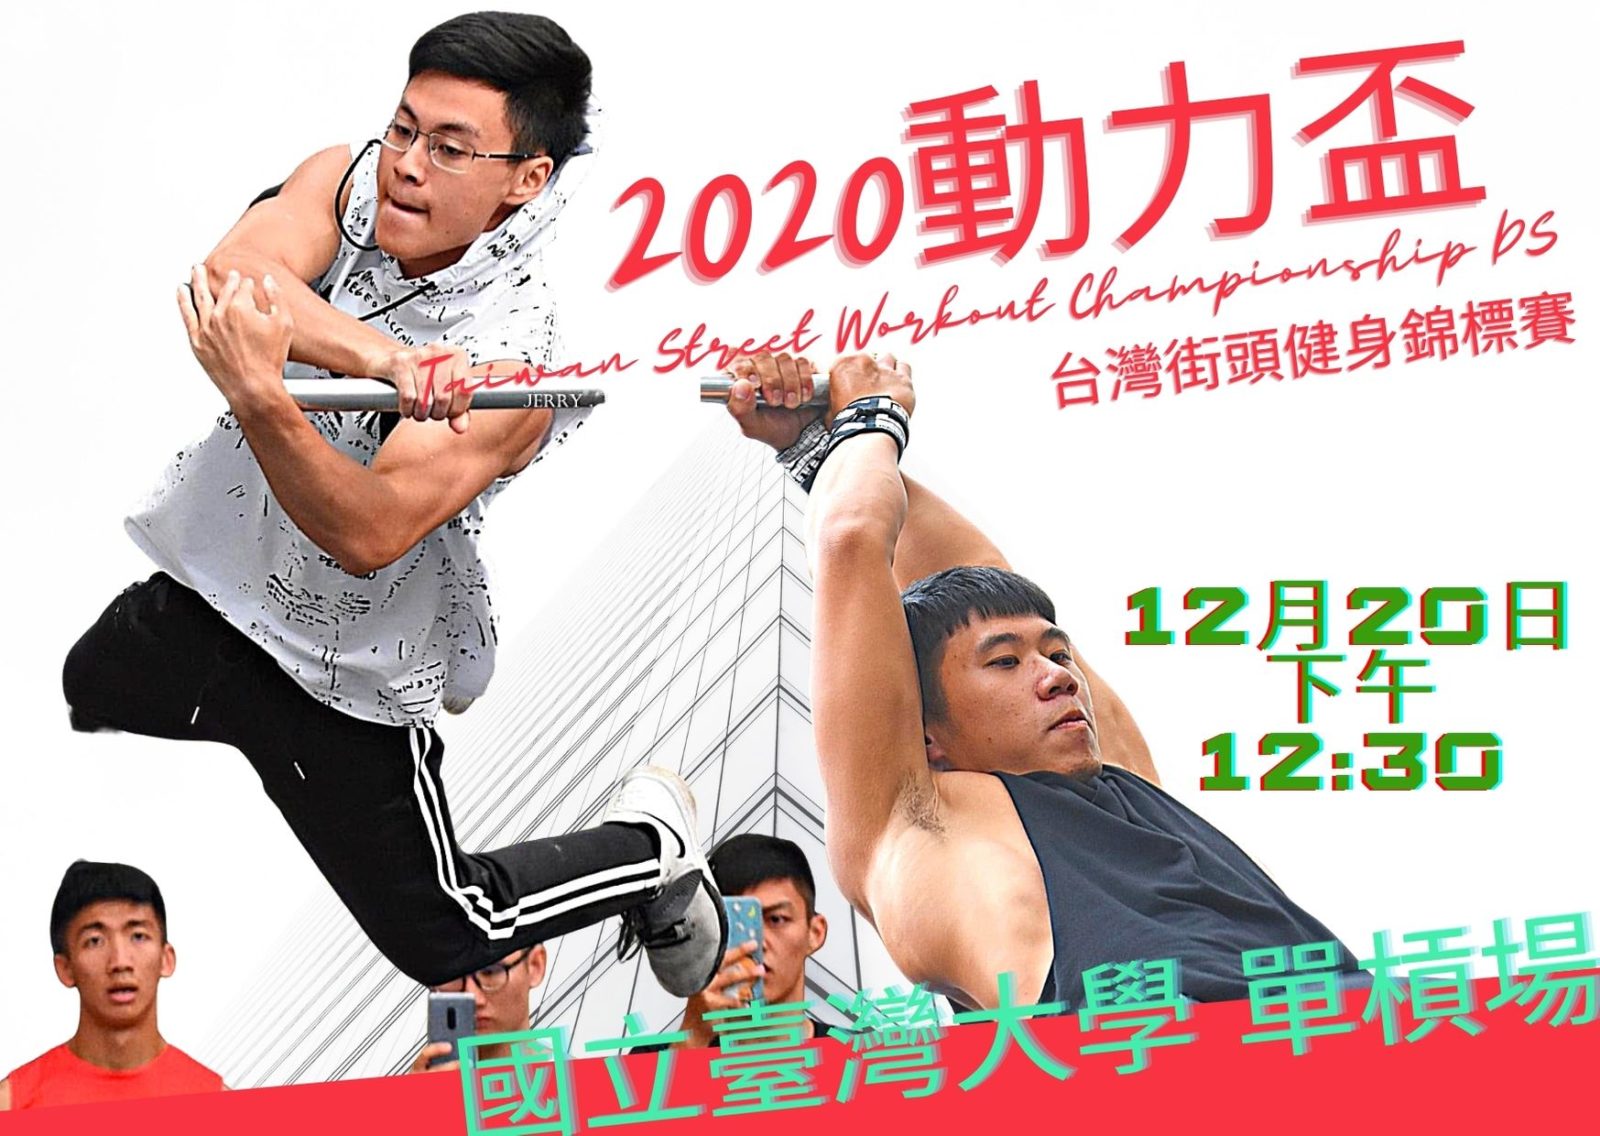 【2020 最受關注的街健比賽】動力盃台灣街頭健身 錦標賽 Taiwan Street Workout Championship DS